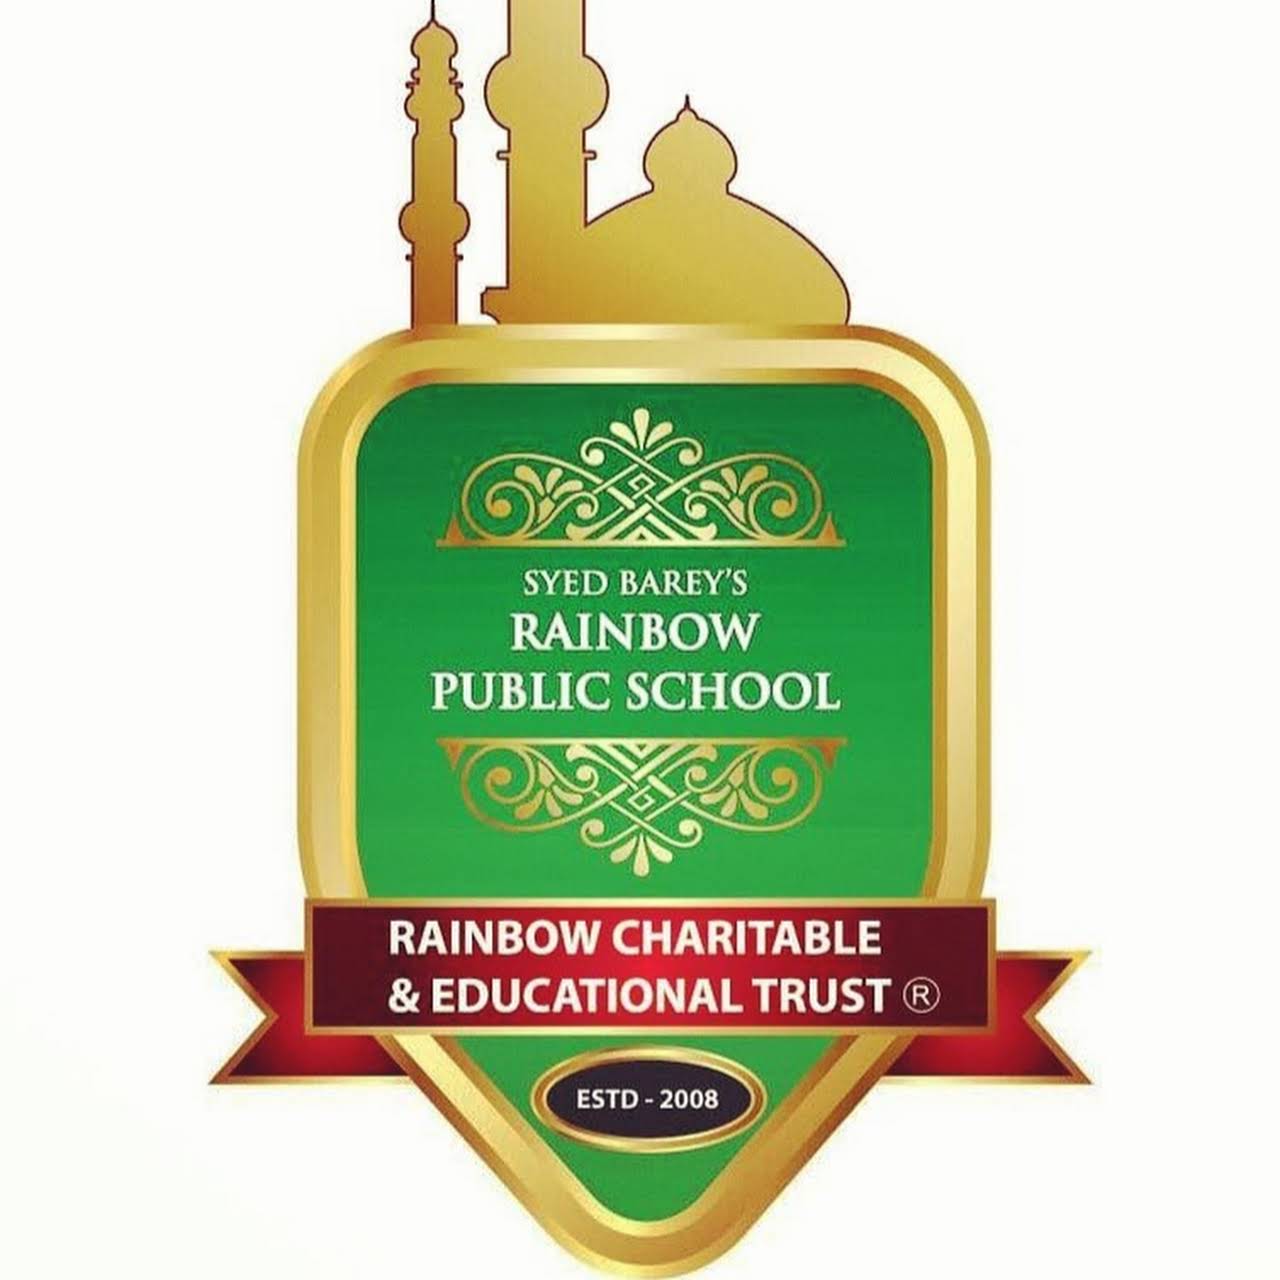 Syed barey's Rainbow Public School Logo